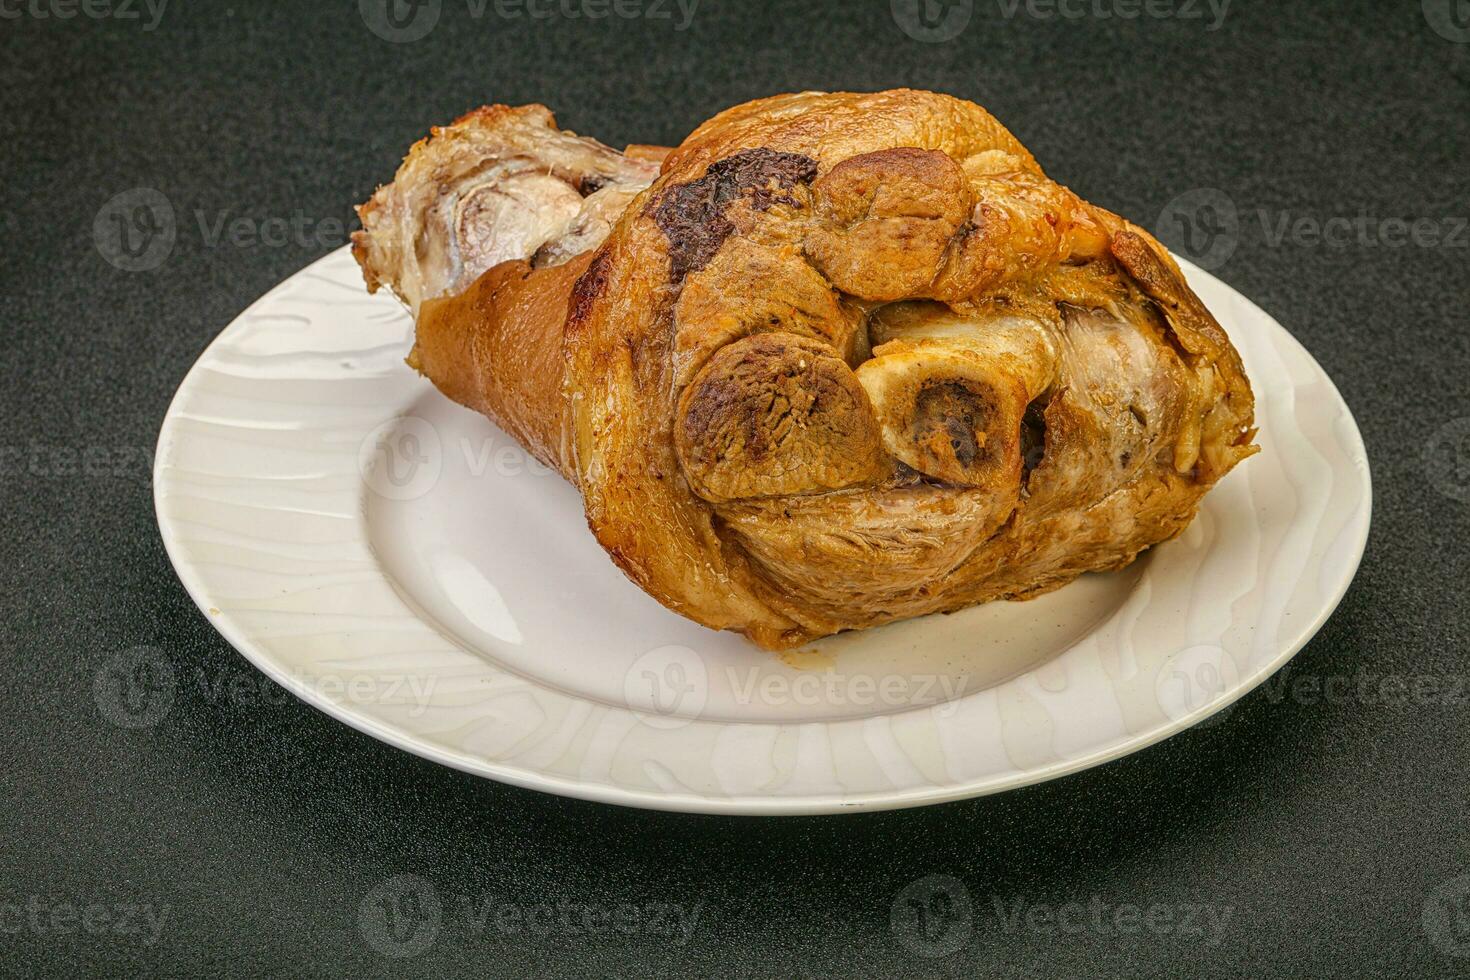 jarret de porc cuit au four avec des épices photo